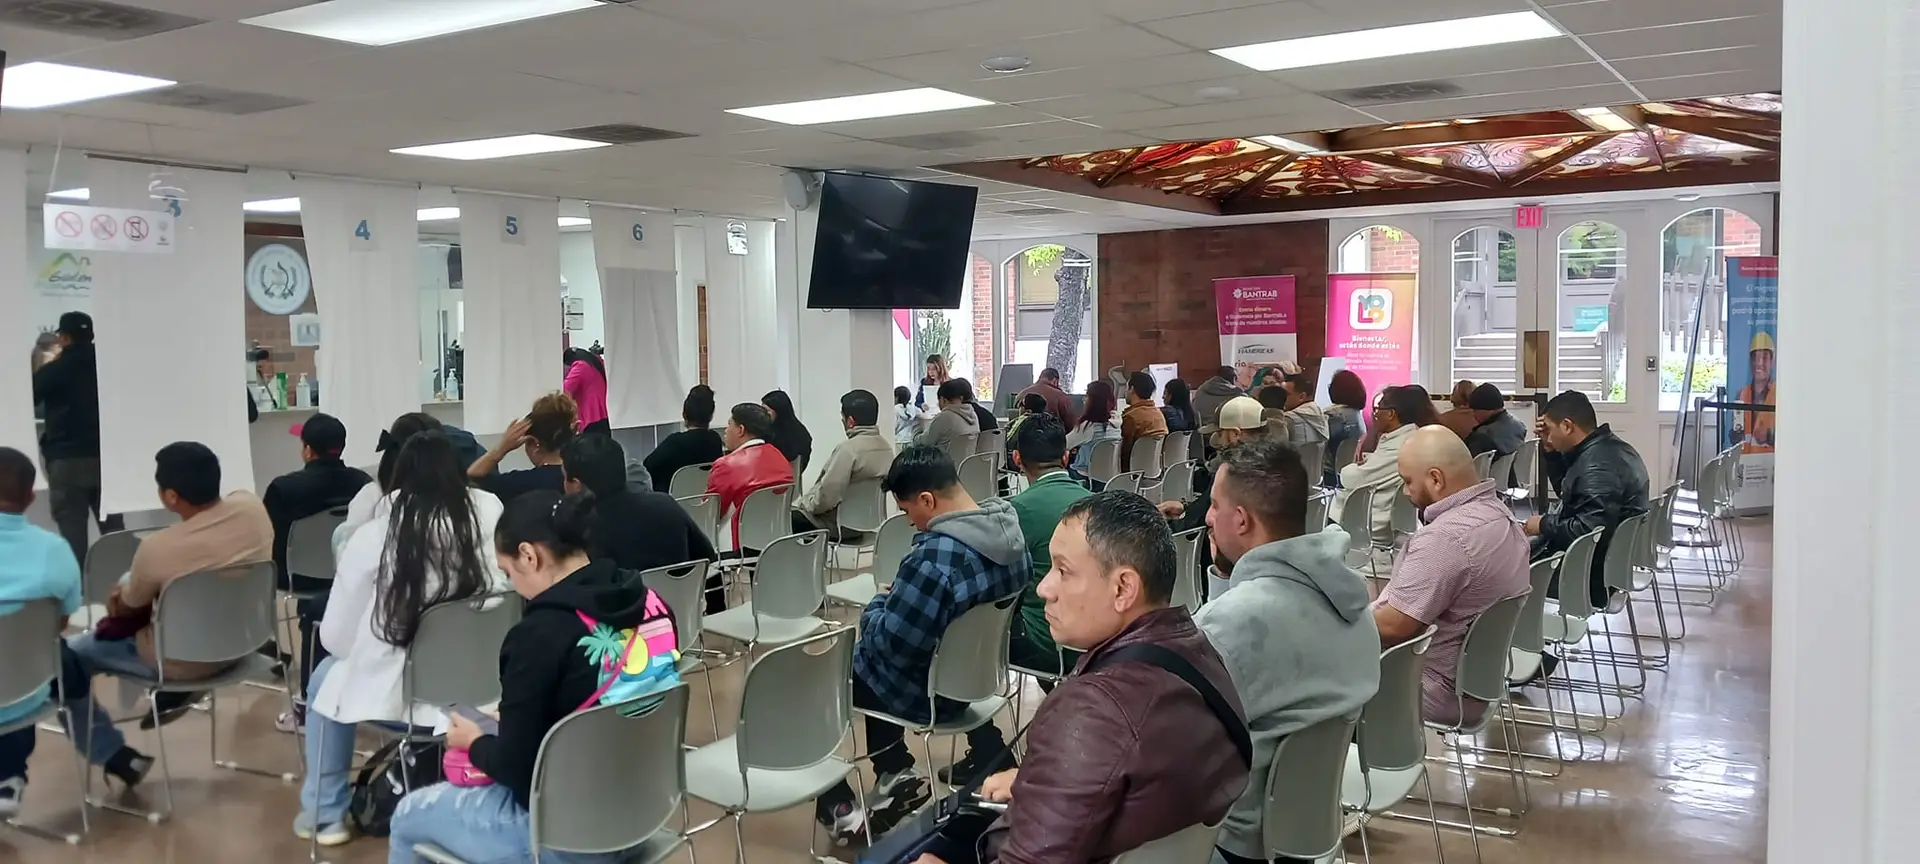 Consulados de Guatemala en Arizona: Ubicación y horarios